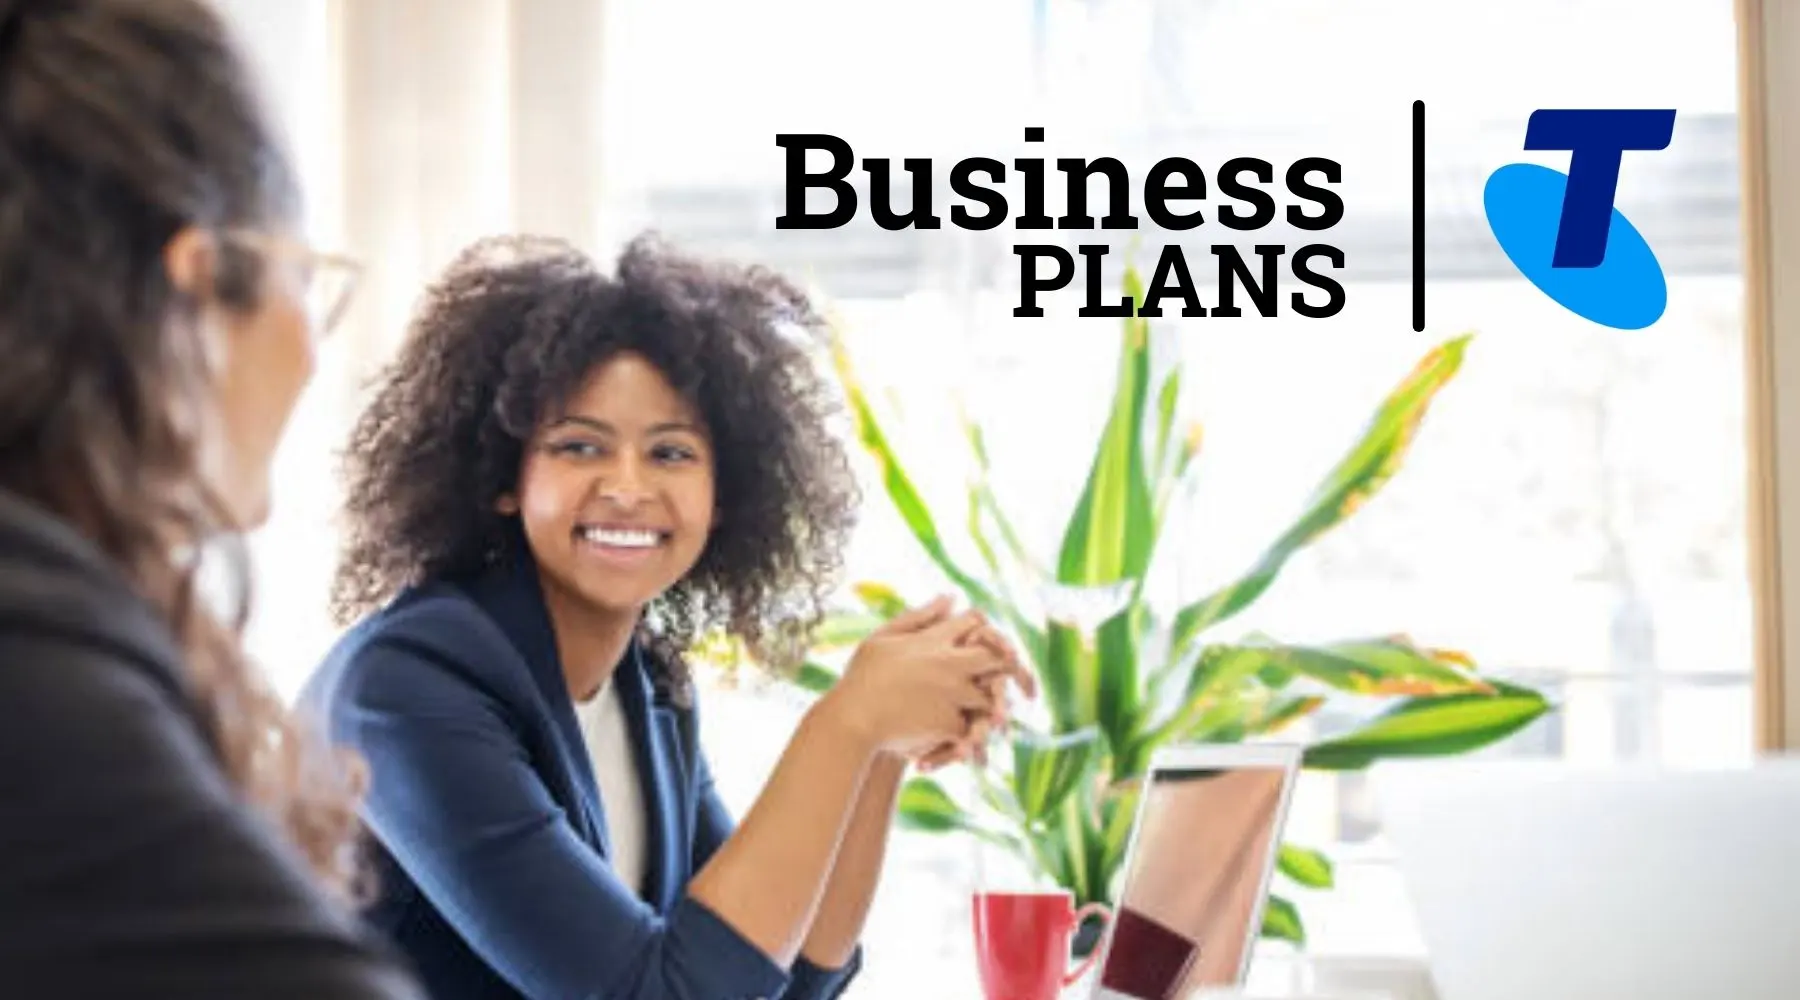 telstra business plan deals